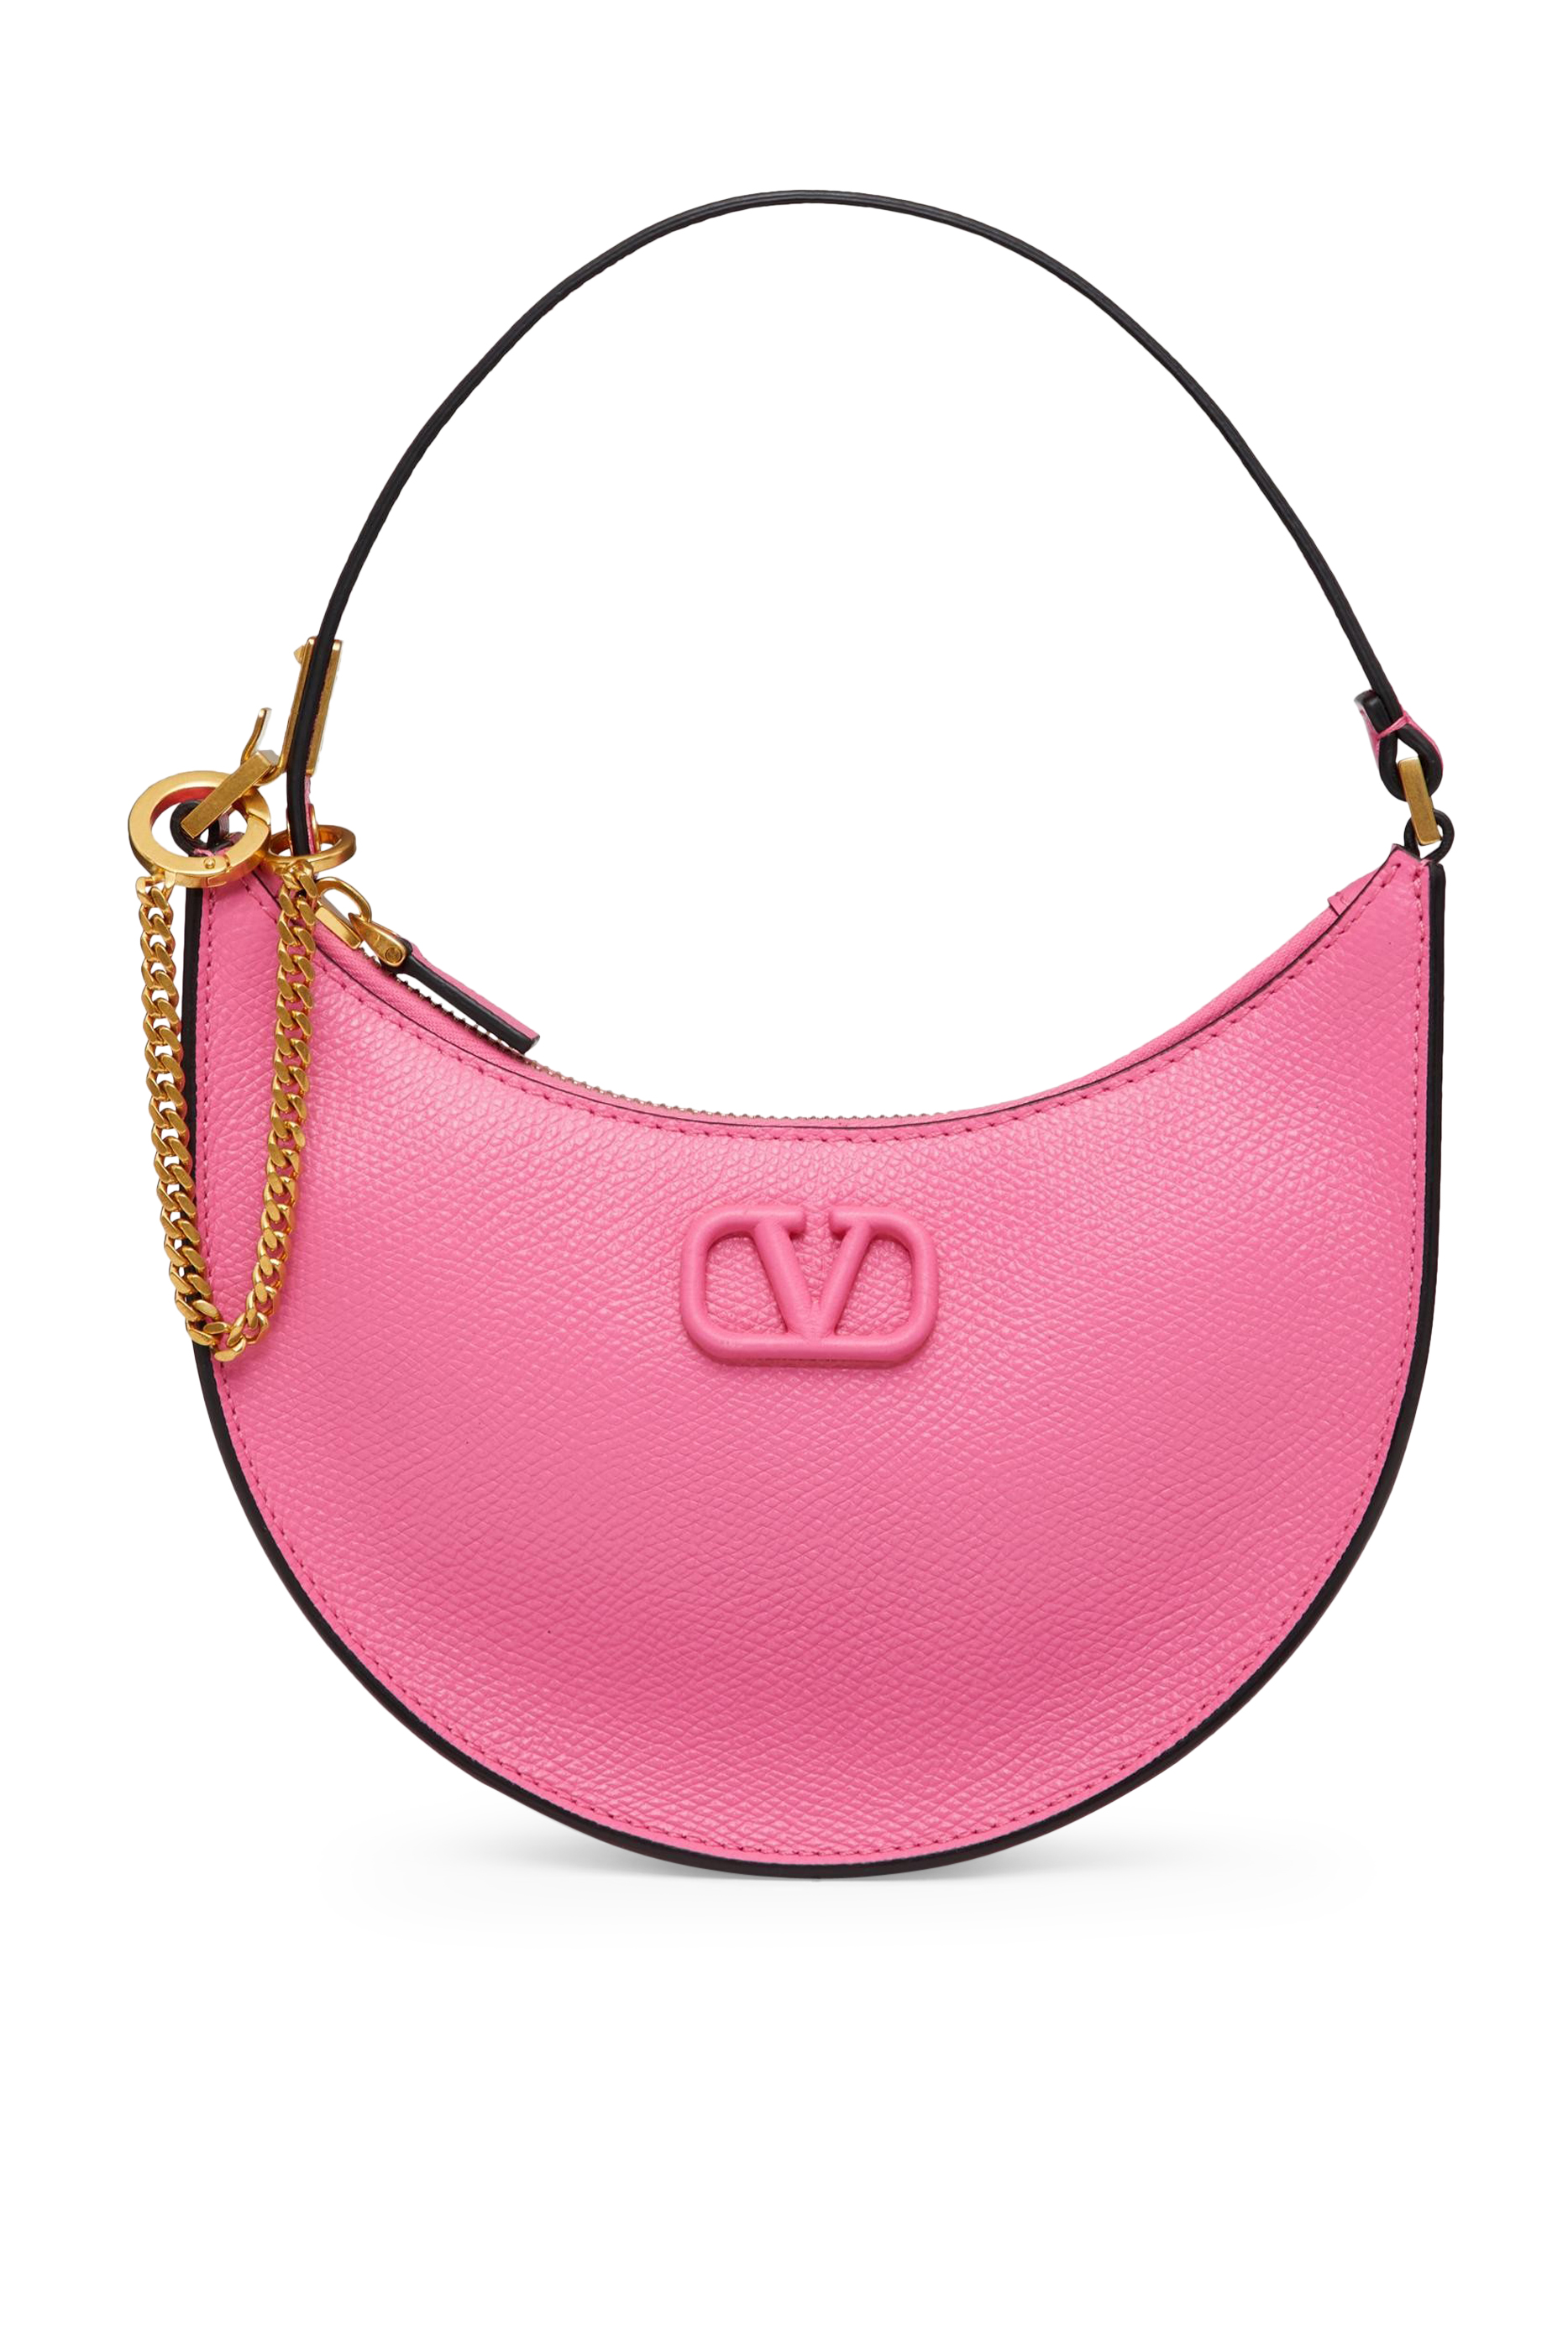 Buy Valentino Valentino Garavani Mini VLogo Signature Hobo Bag 